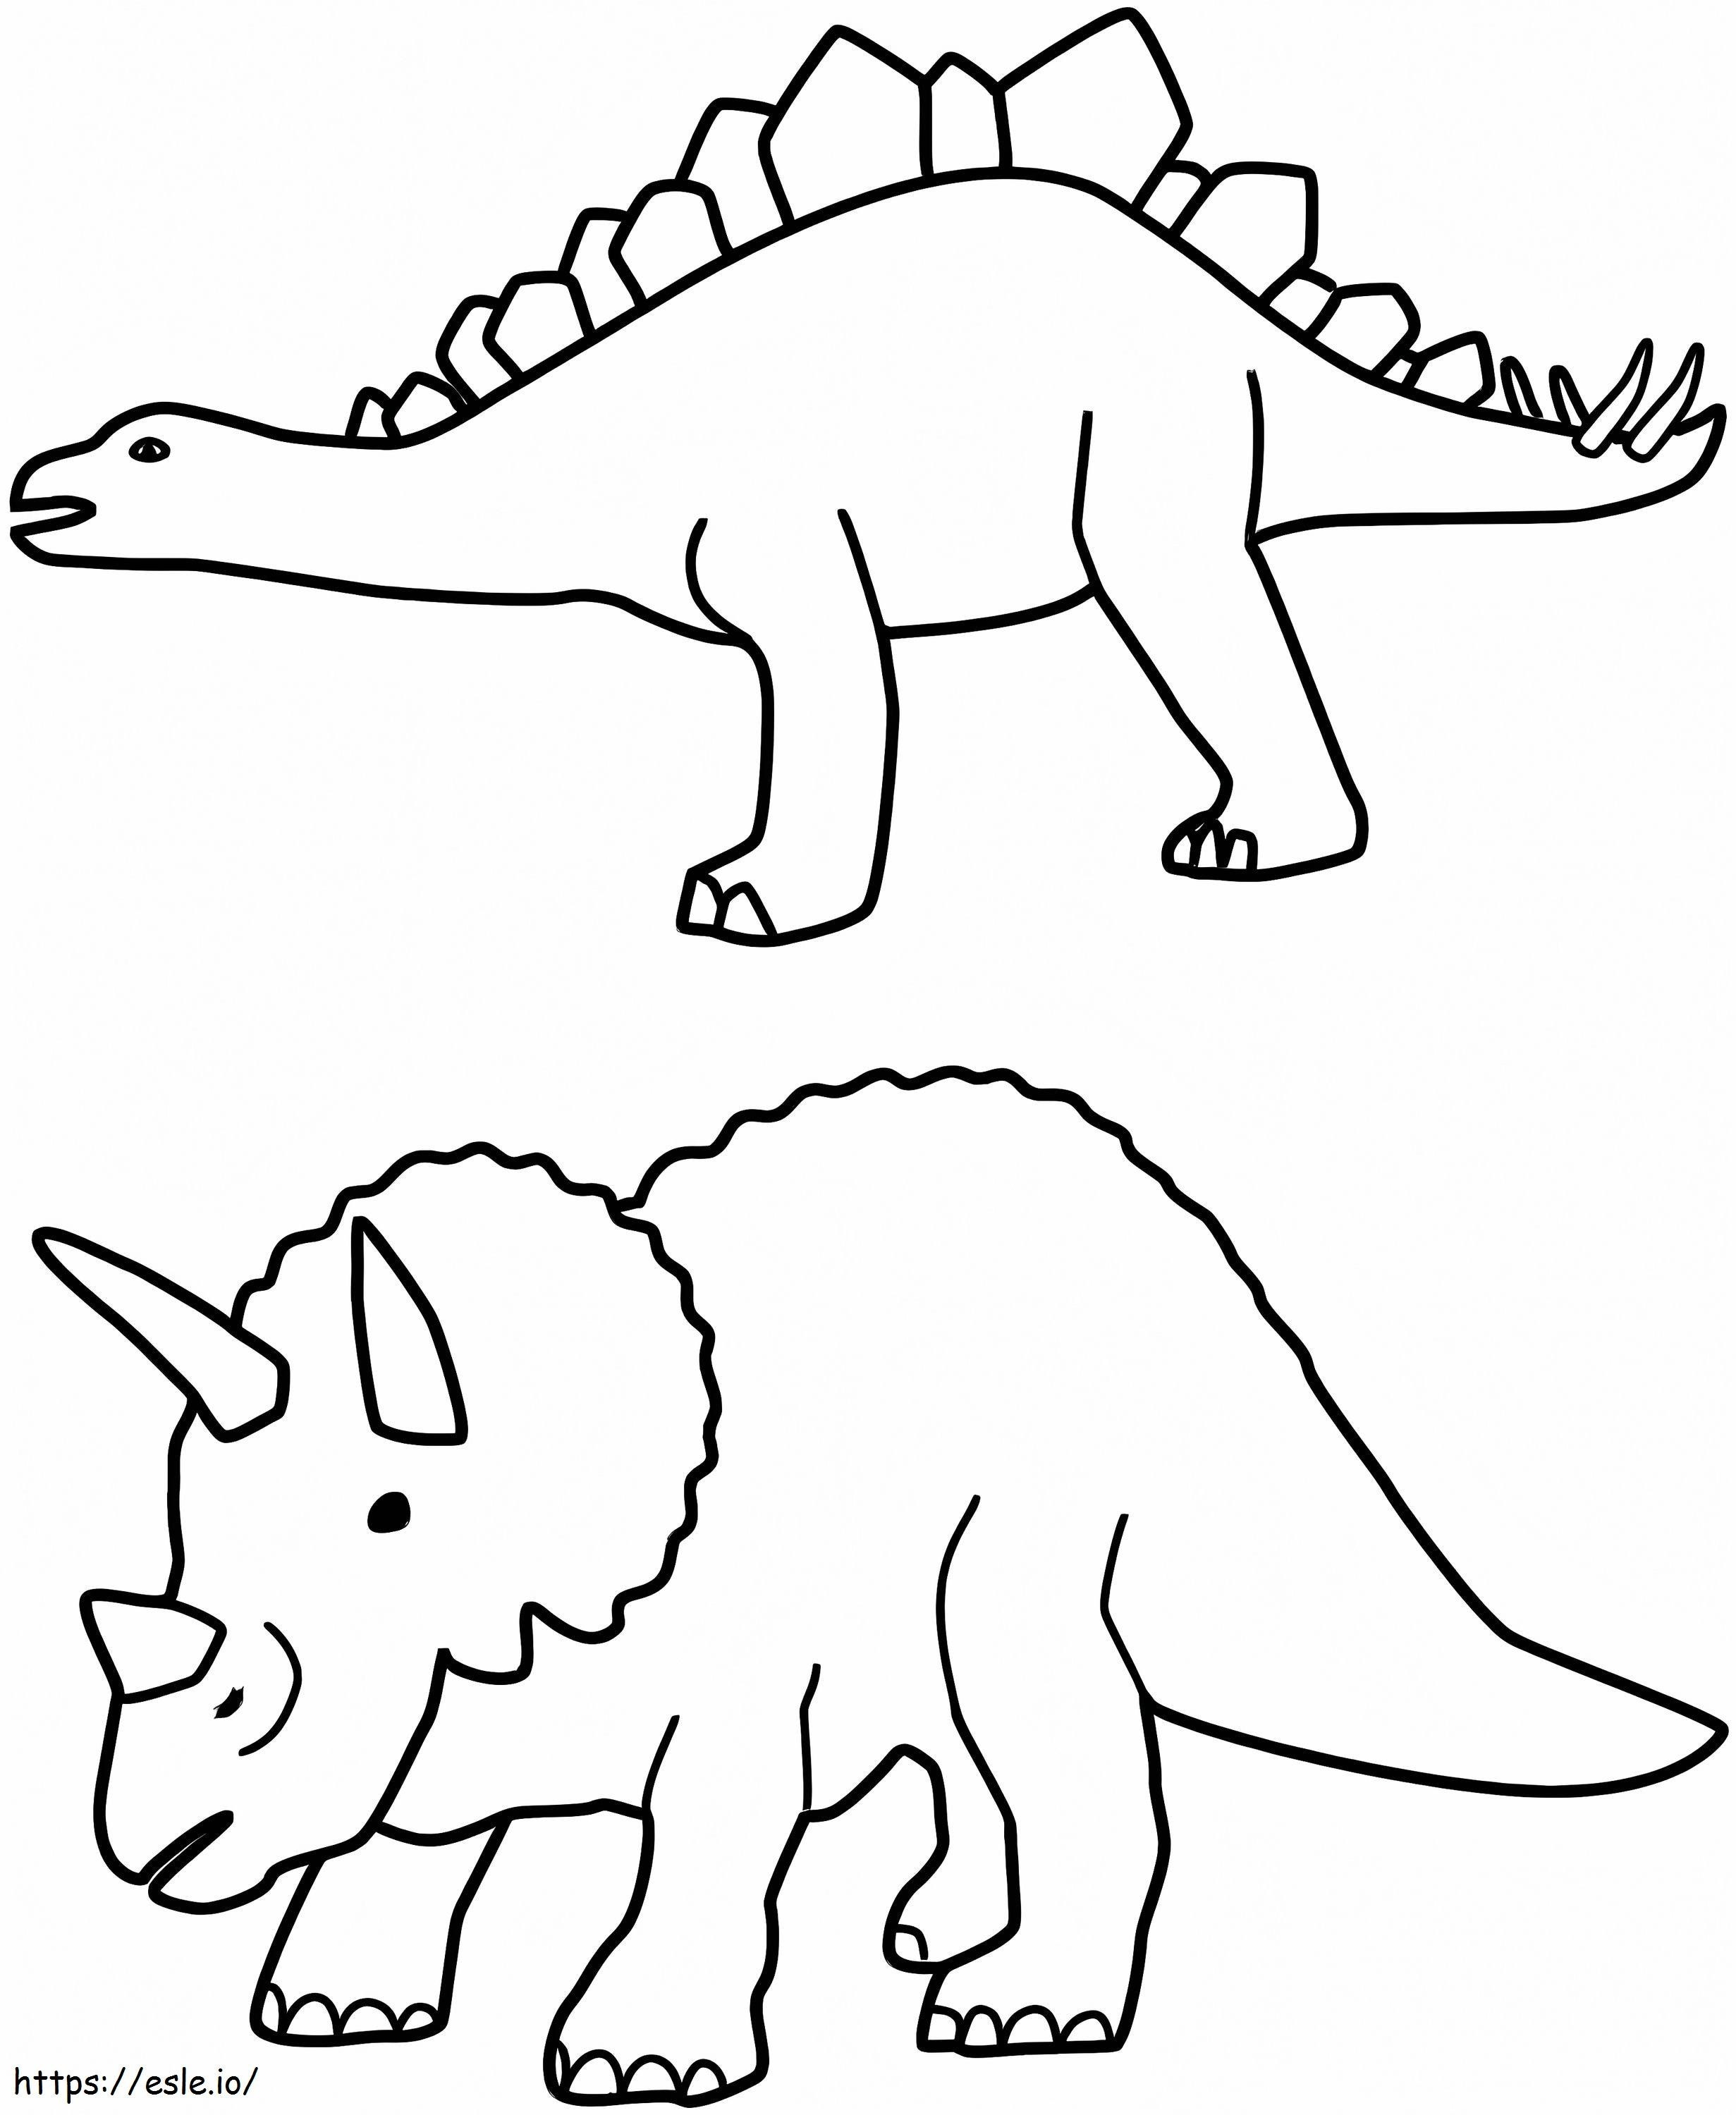 Estegosaurio și Triceratop de colorat